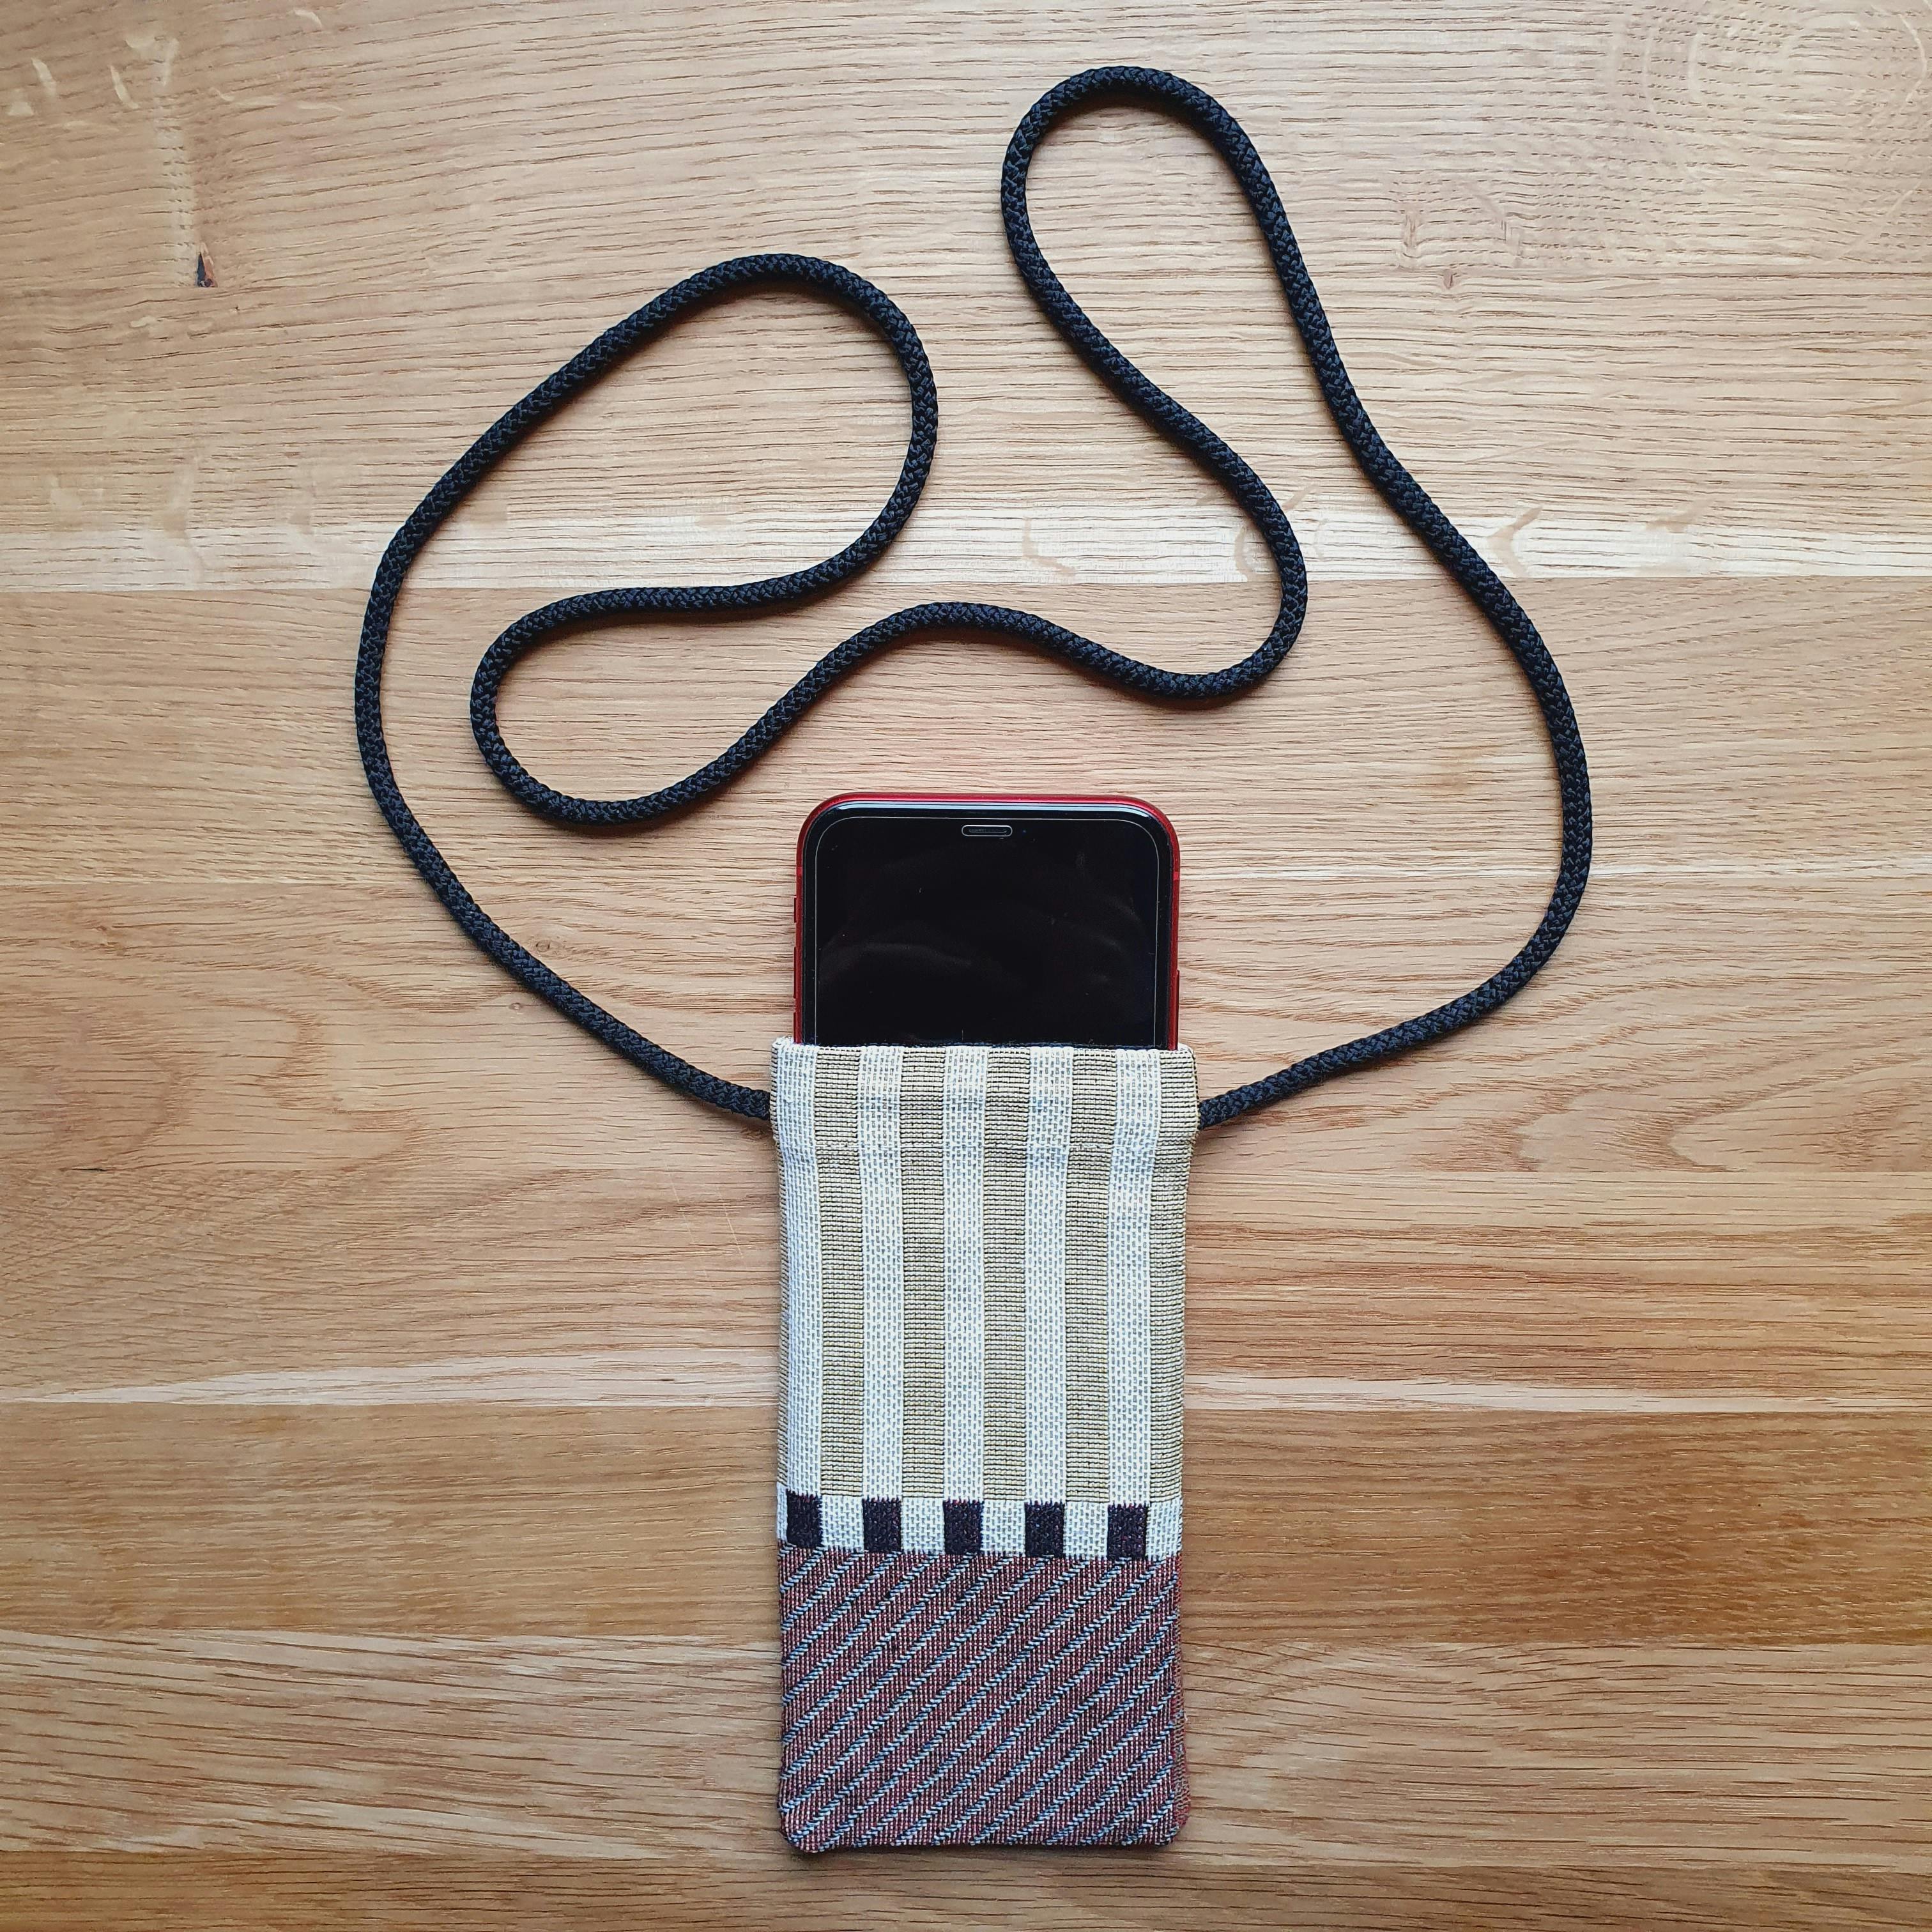  Selbstgemachte iPhone-Hülle aus gestreiftem Webstoff mit Umhängekordel und Handy